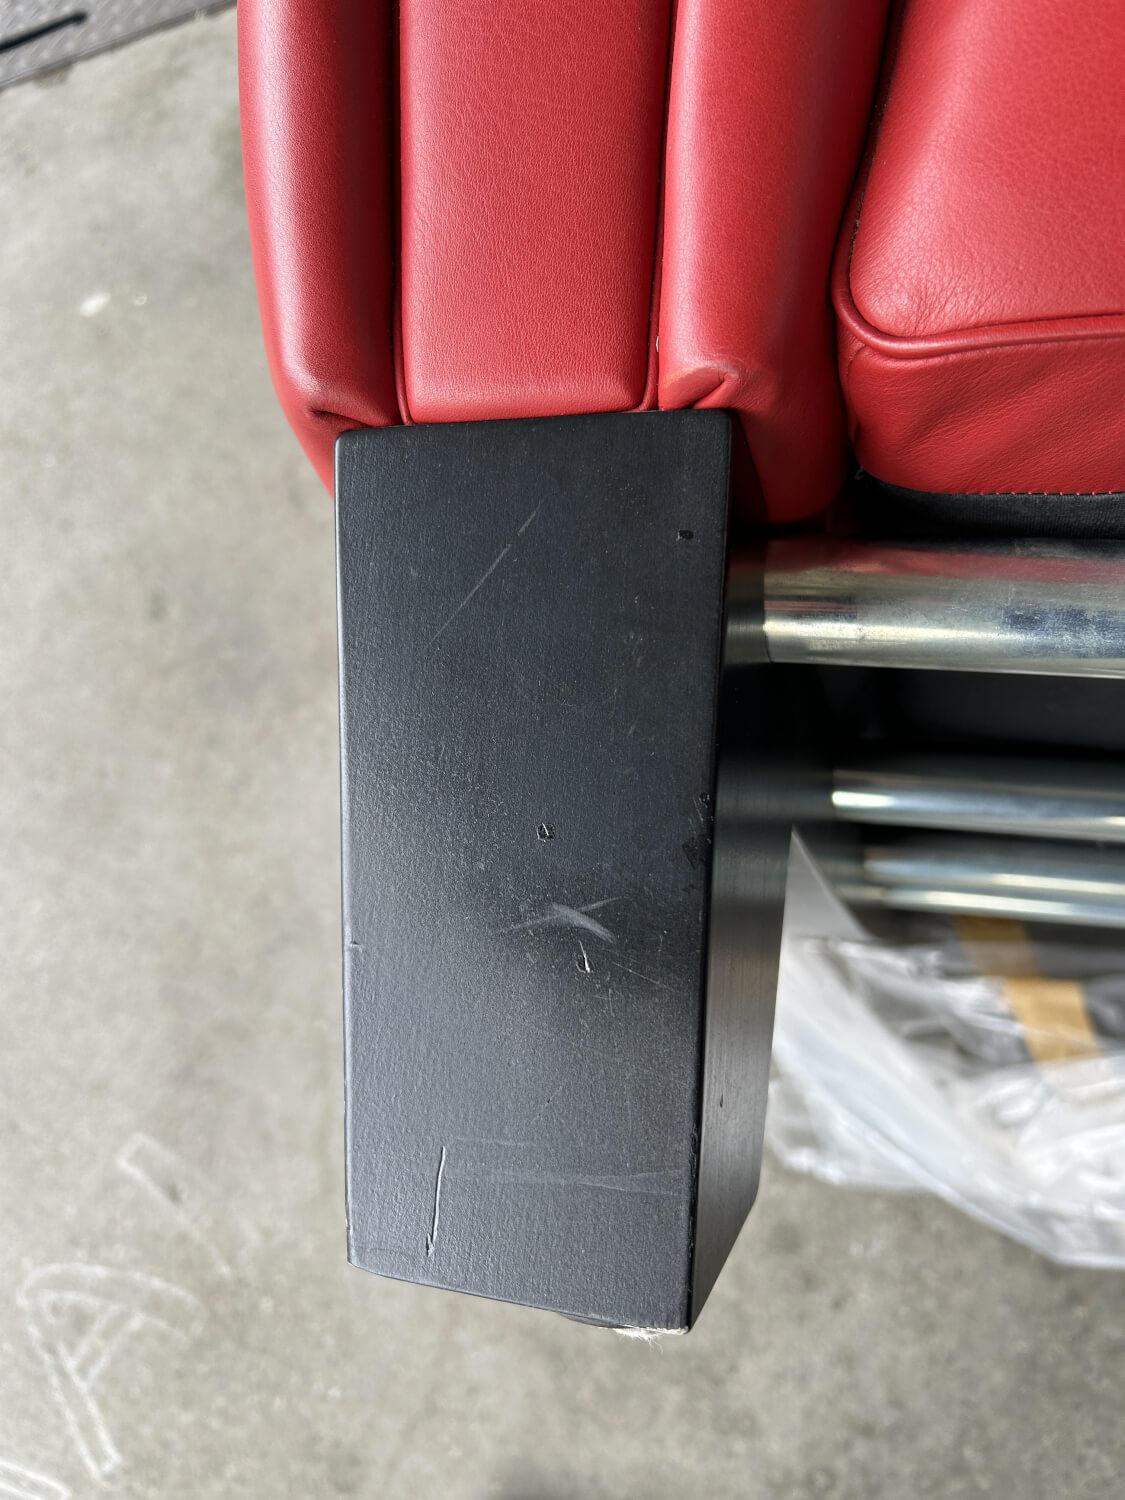 Sessel DS 57 Leder Select Rot Füße Schwarz Lackiert mit bekannten Gebrauchsspuren